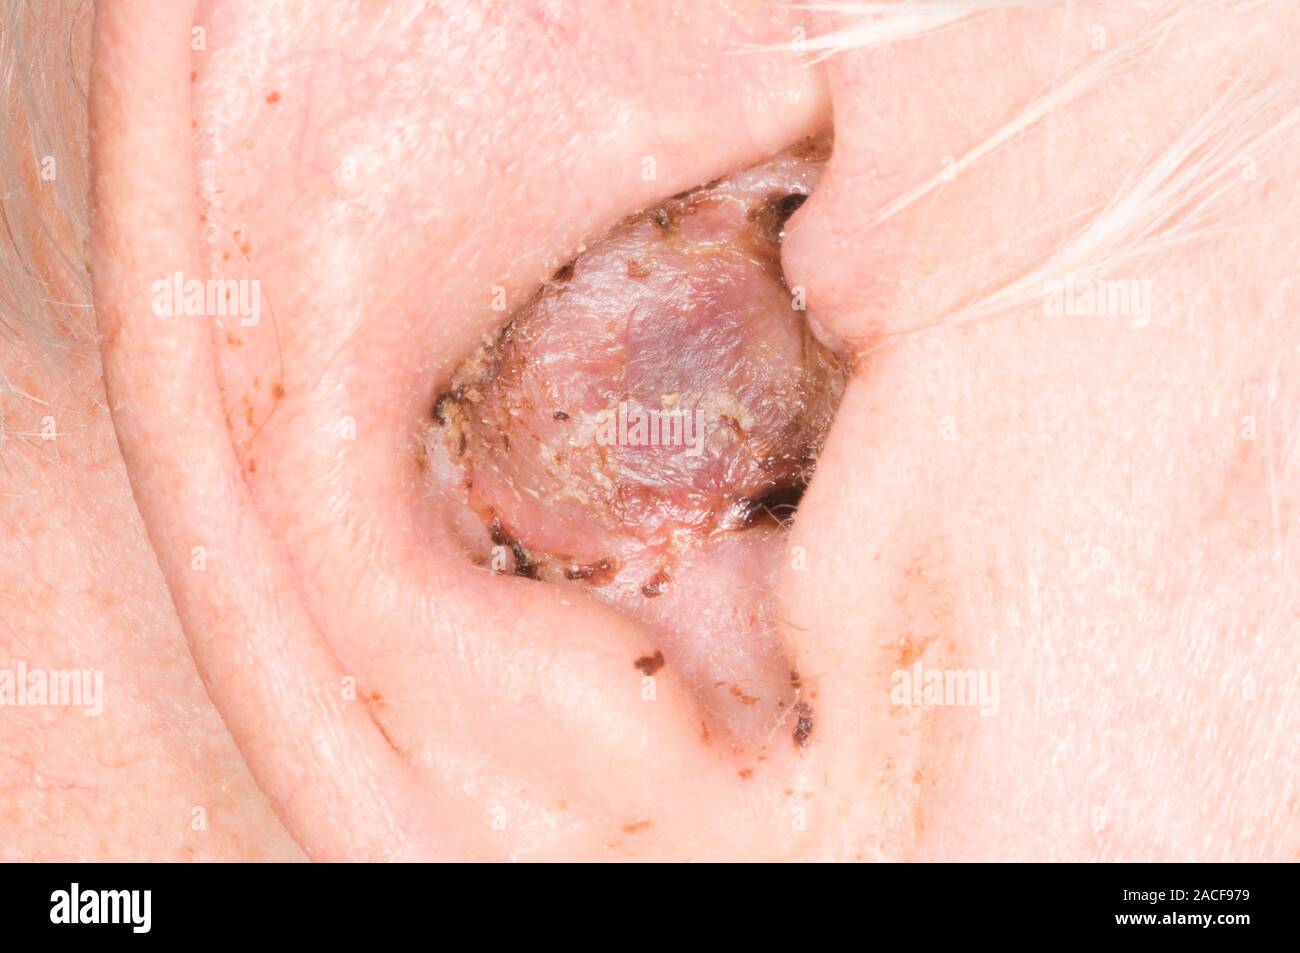 Hautkrebs Wunde am Ohr des Patienten. Wunde, die sich aus einer exzidiert  Plattenepithelkarzinom, eine Art von Krebs, der in spezialisierte  Epithelzellen entsteht Stockfotografie - Alamy